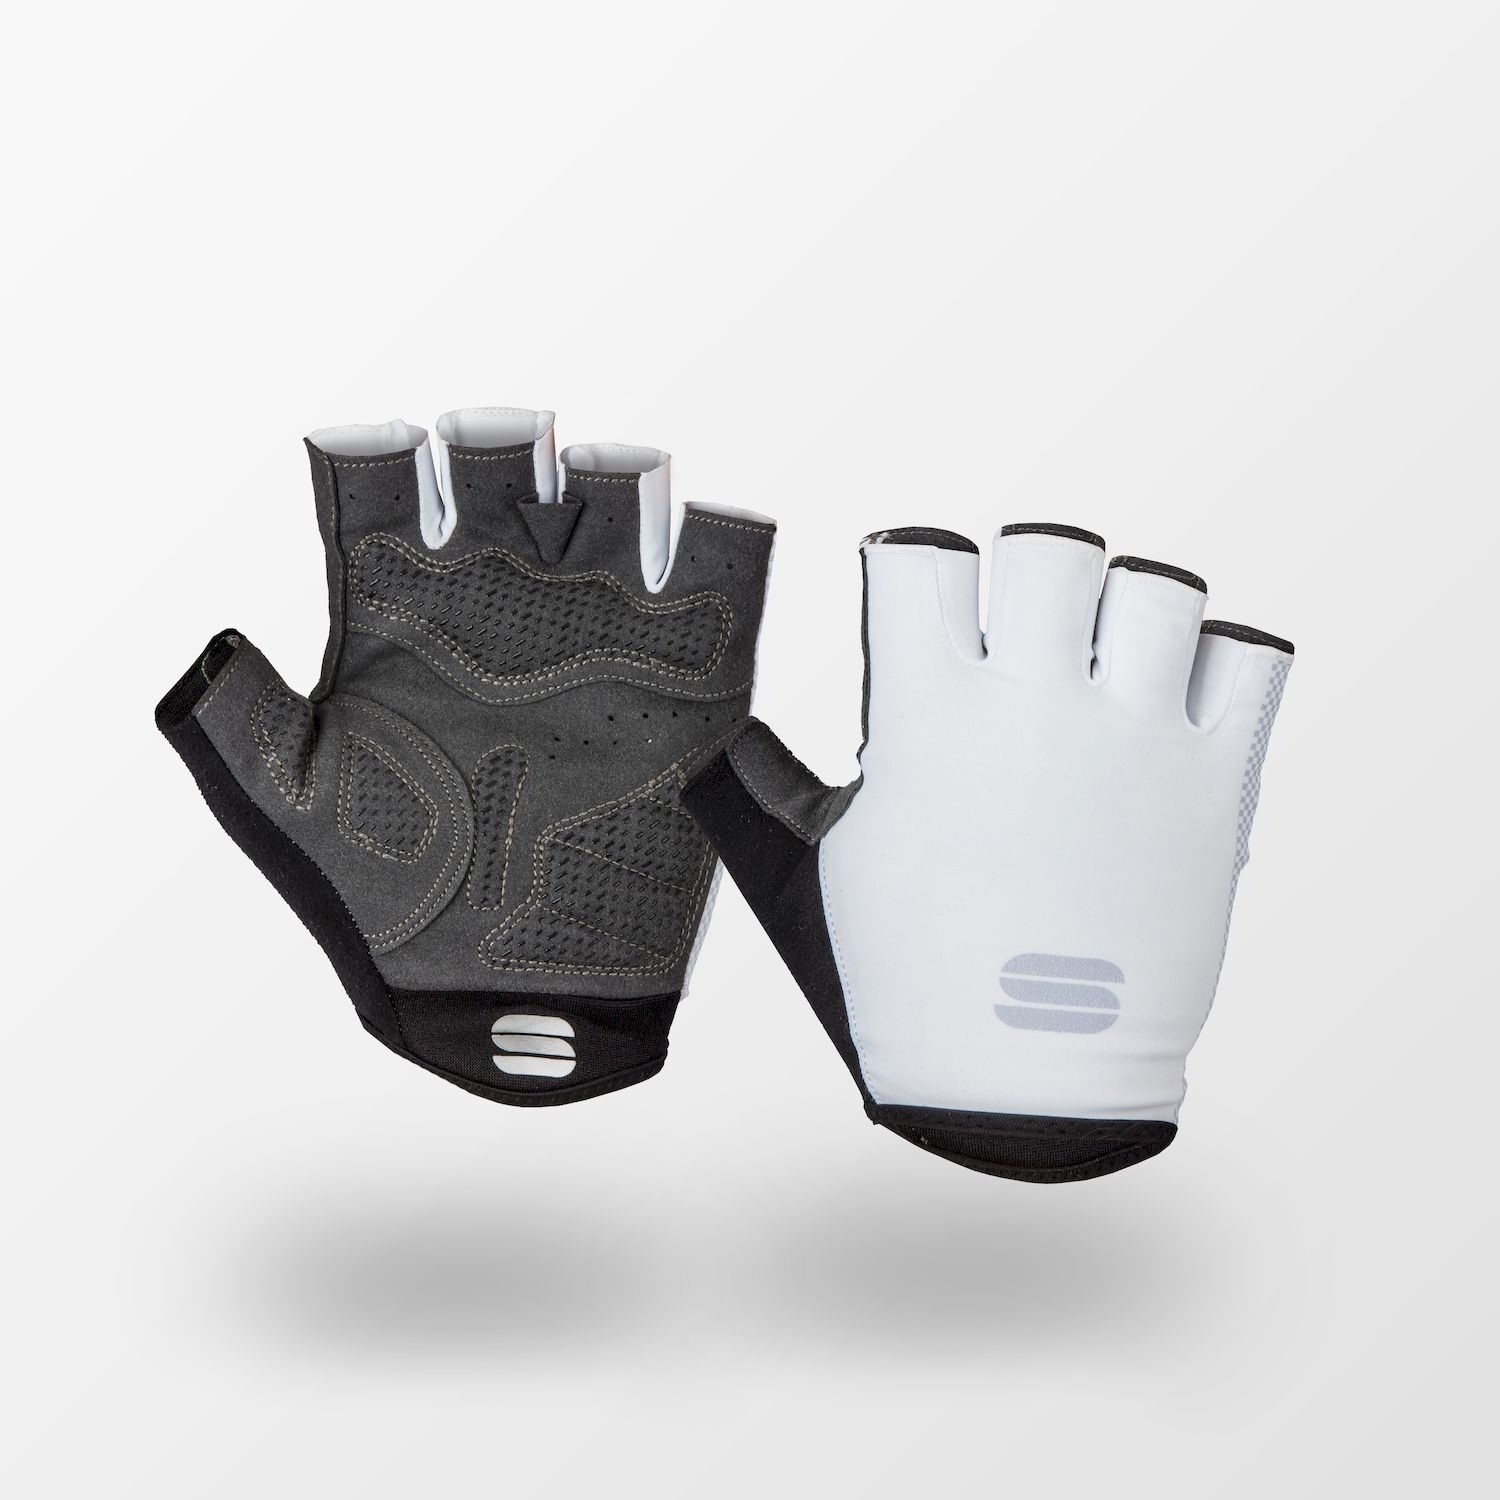 Sportful Race Gloves - Short finger gloves